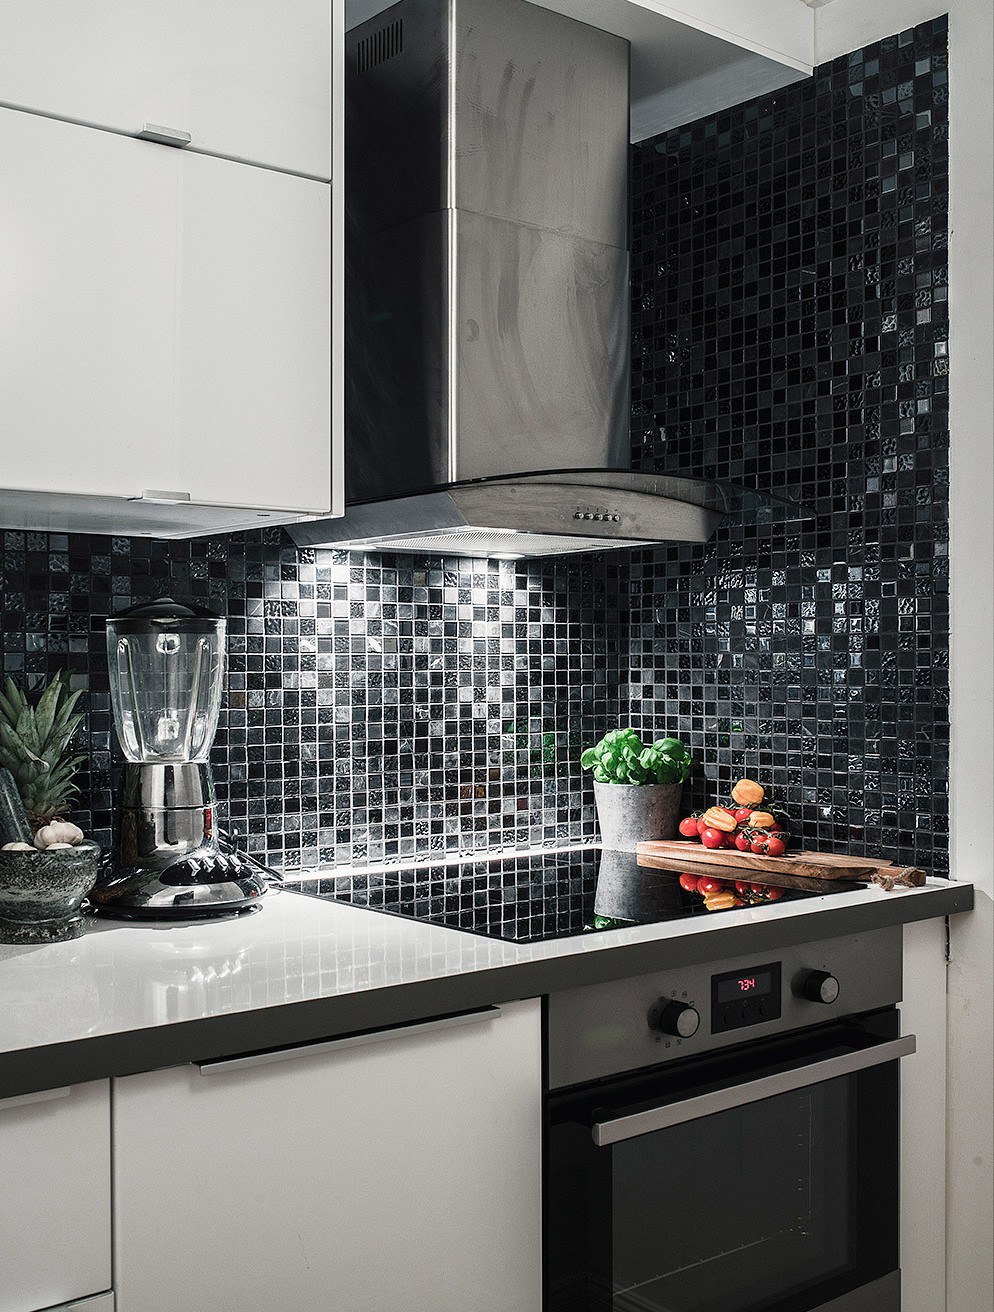 Кухня выдержана в черно-белых тонах с вкраплениями металла бытовых приборов